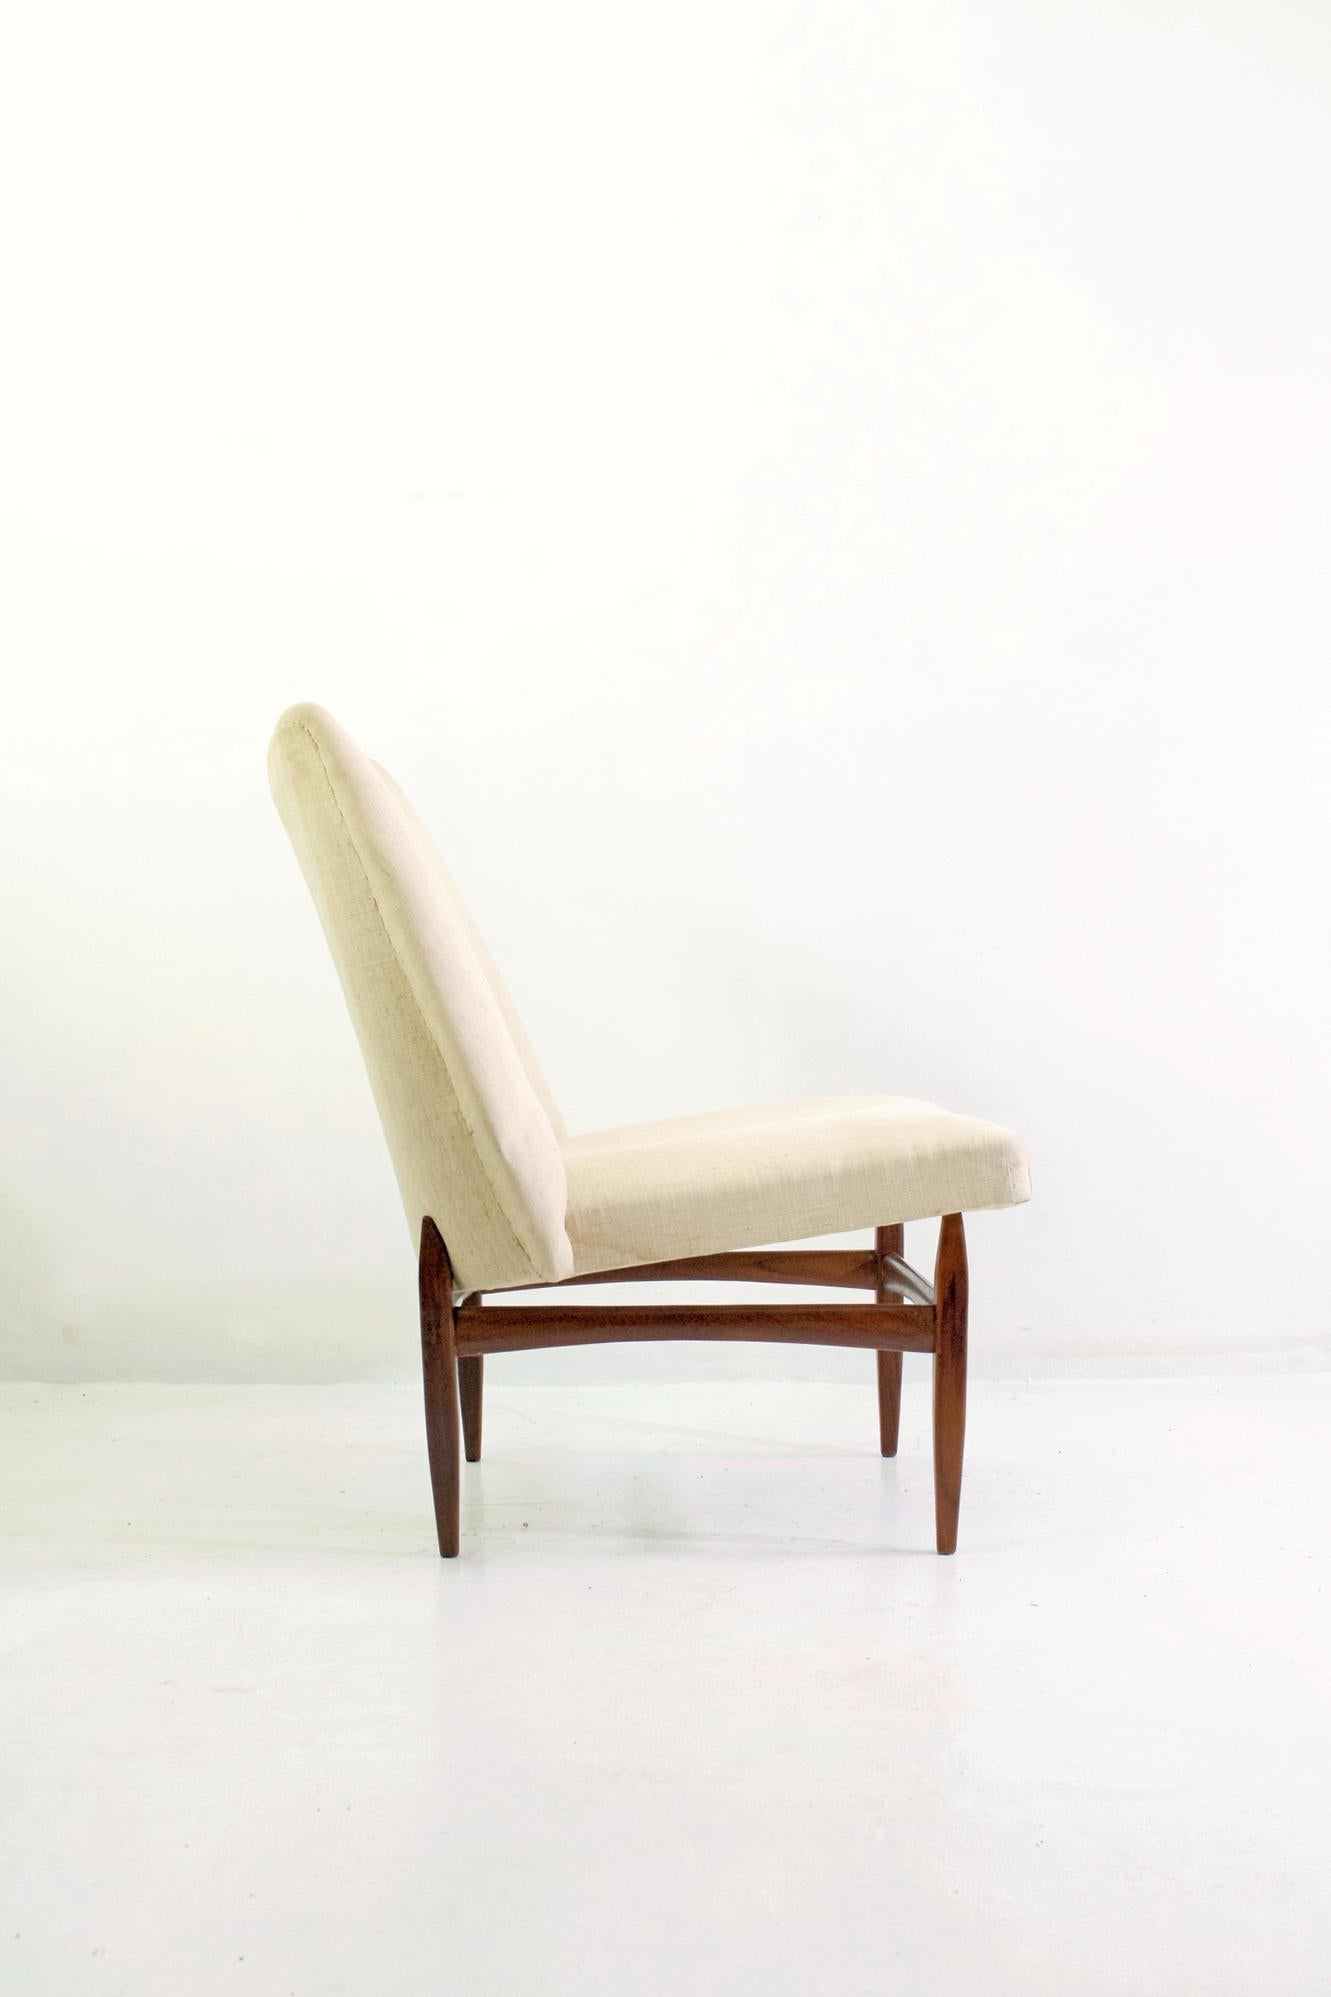 20th Century Mid-Century Modern Italian Lounge Chairs in Teak